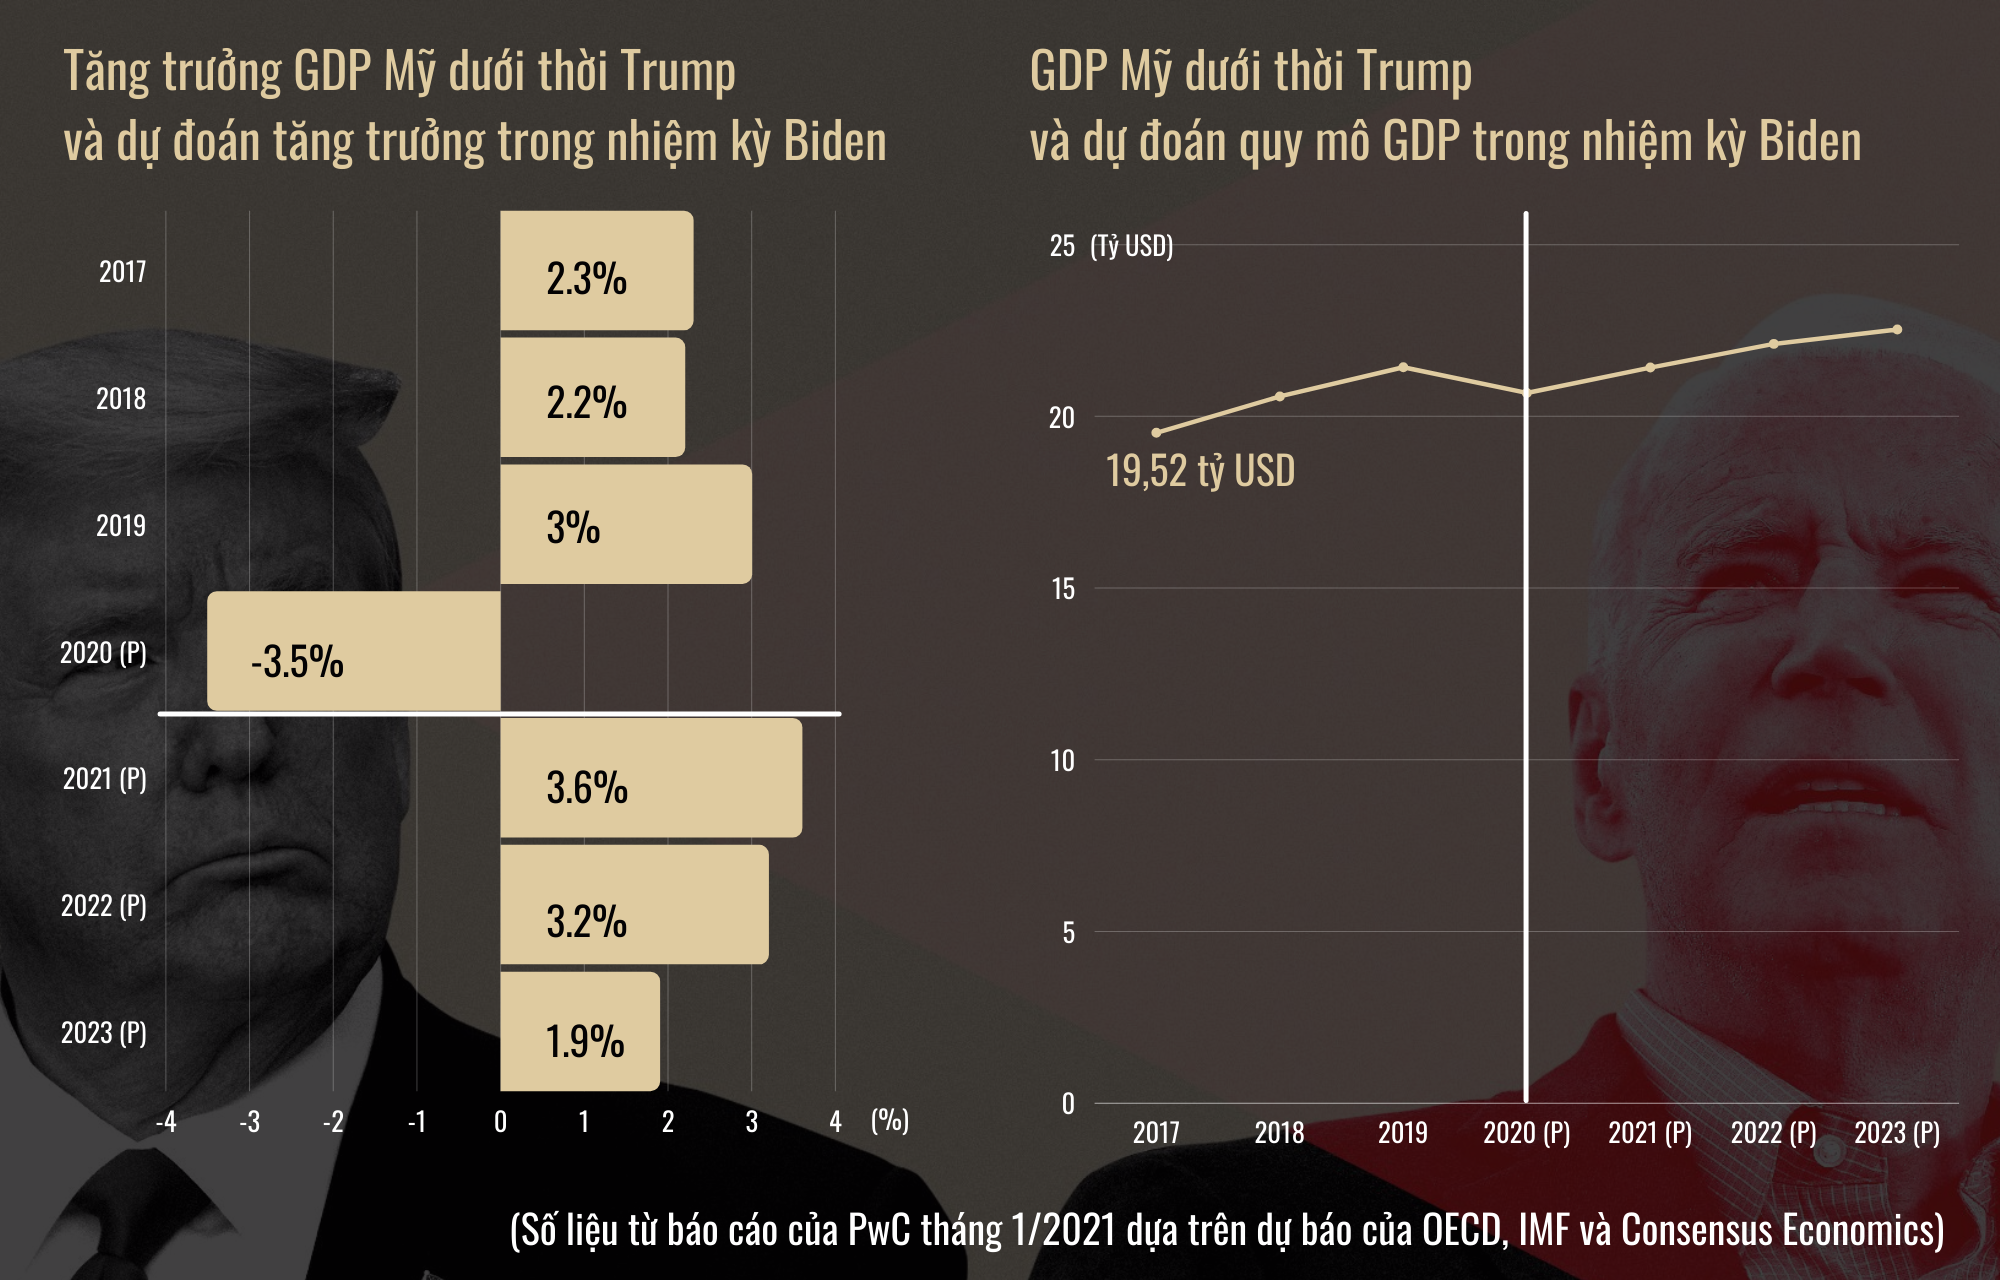 So găng chính sách kinh tế của ông Trump và ông Biden - 6